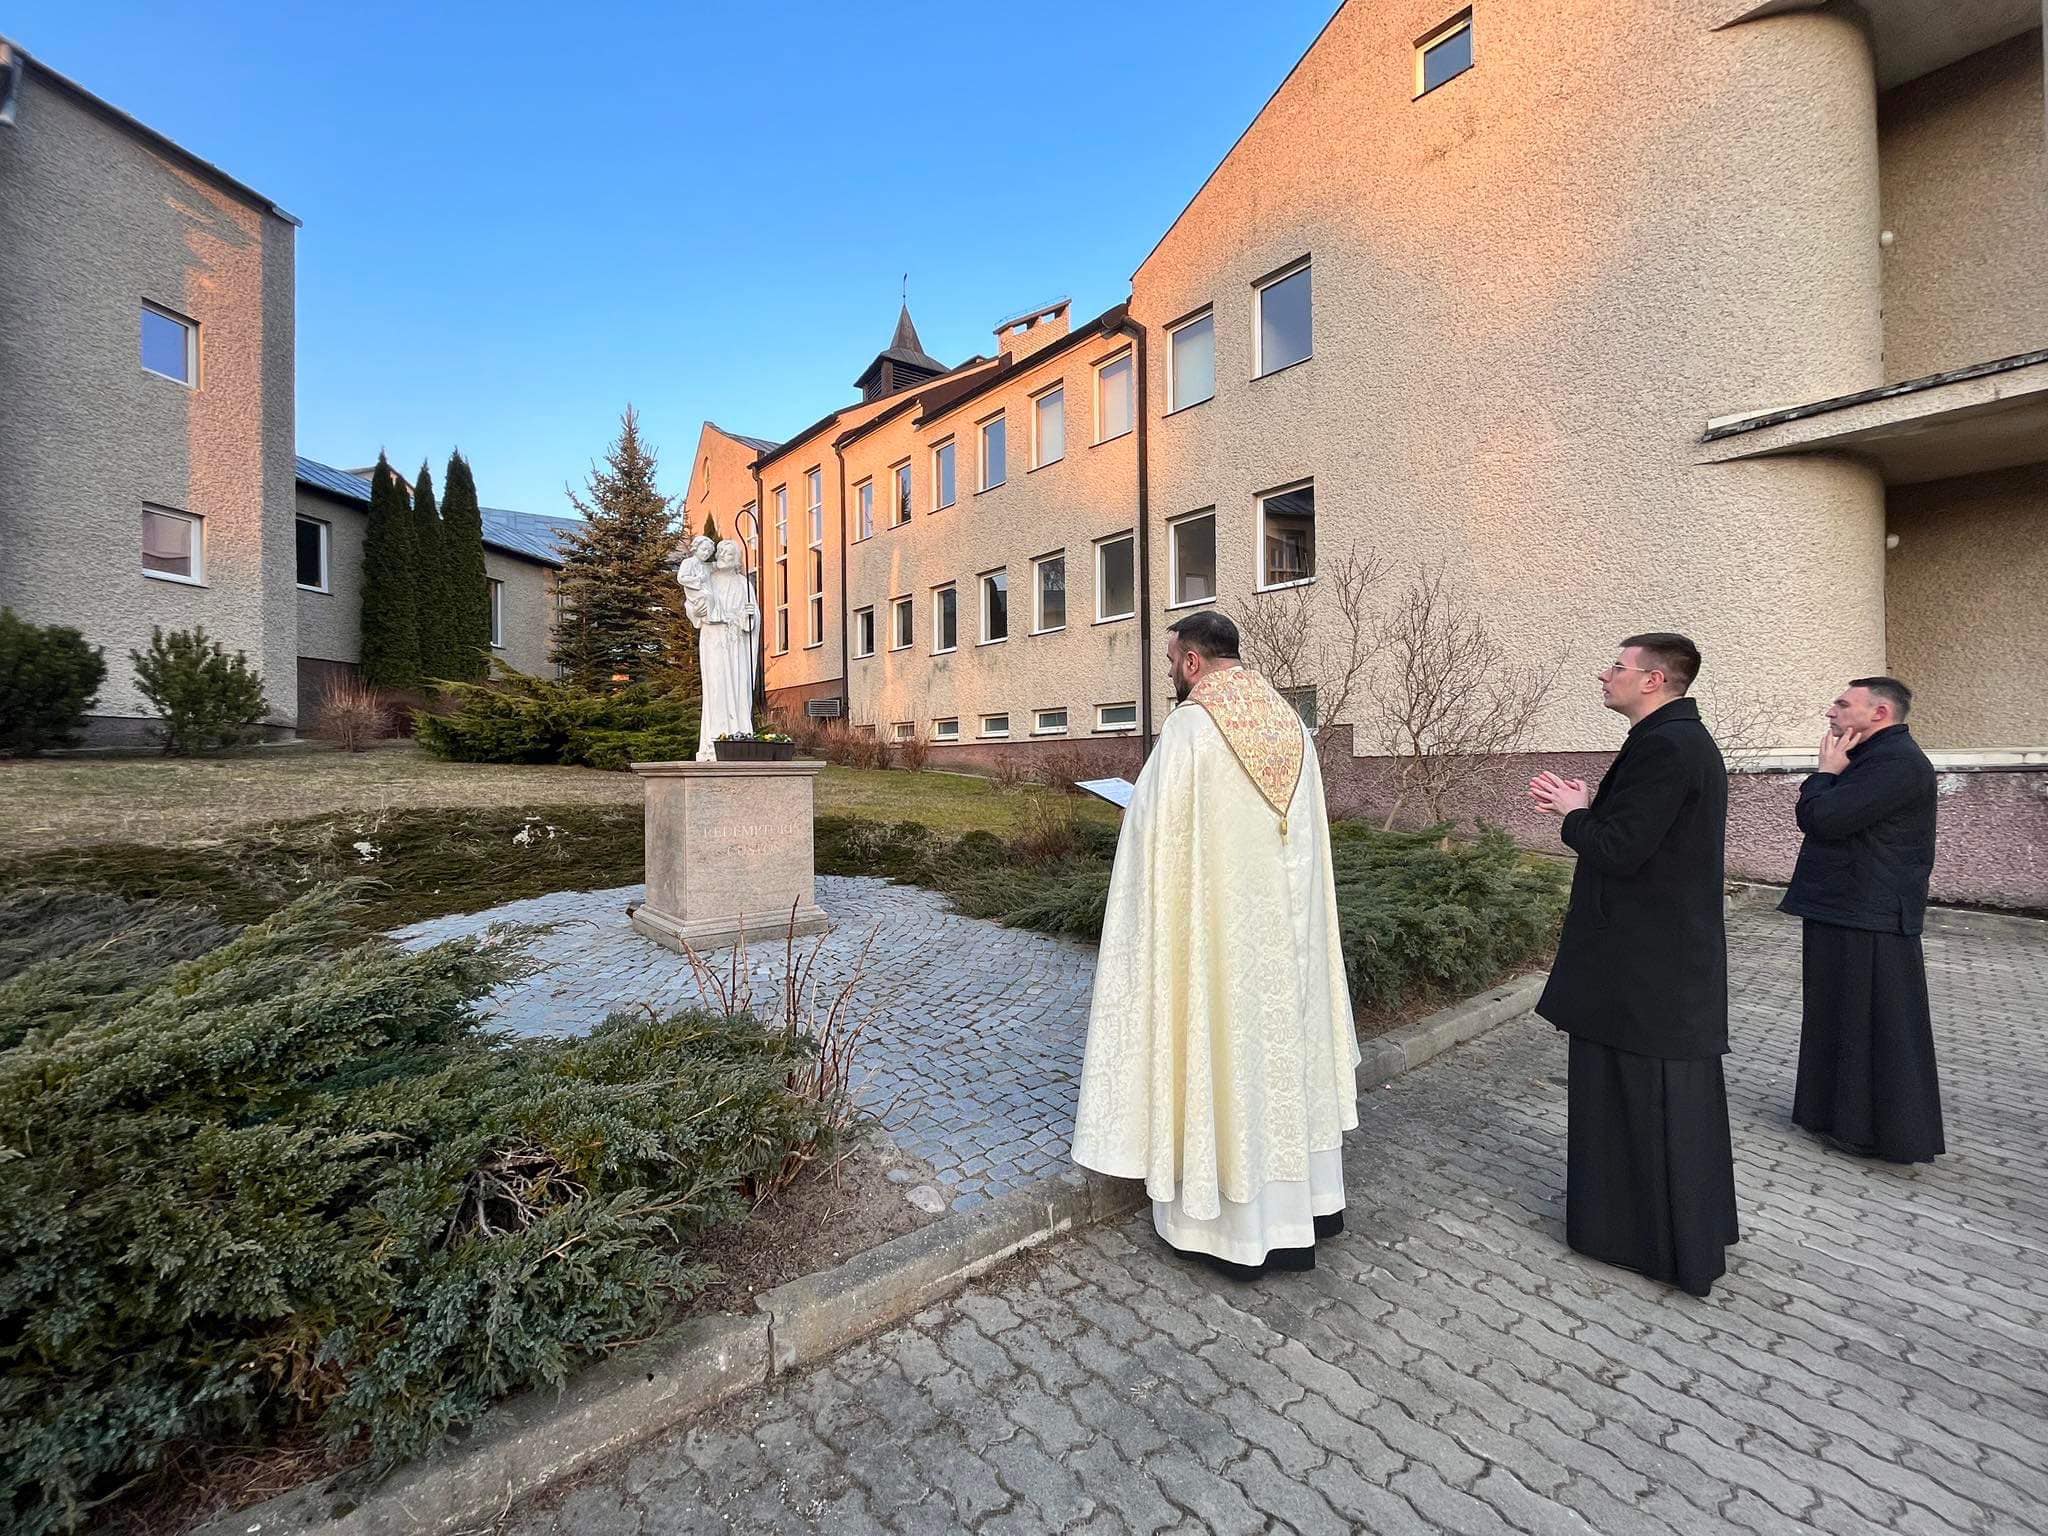 Pierwszy taki przypadek od 72 lat. Kryzys w olsztyńskim kościele? religia Olsztyn, Wiadomości